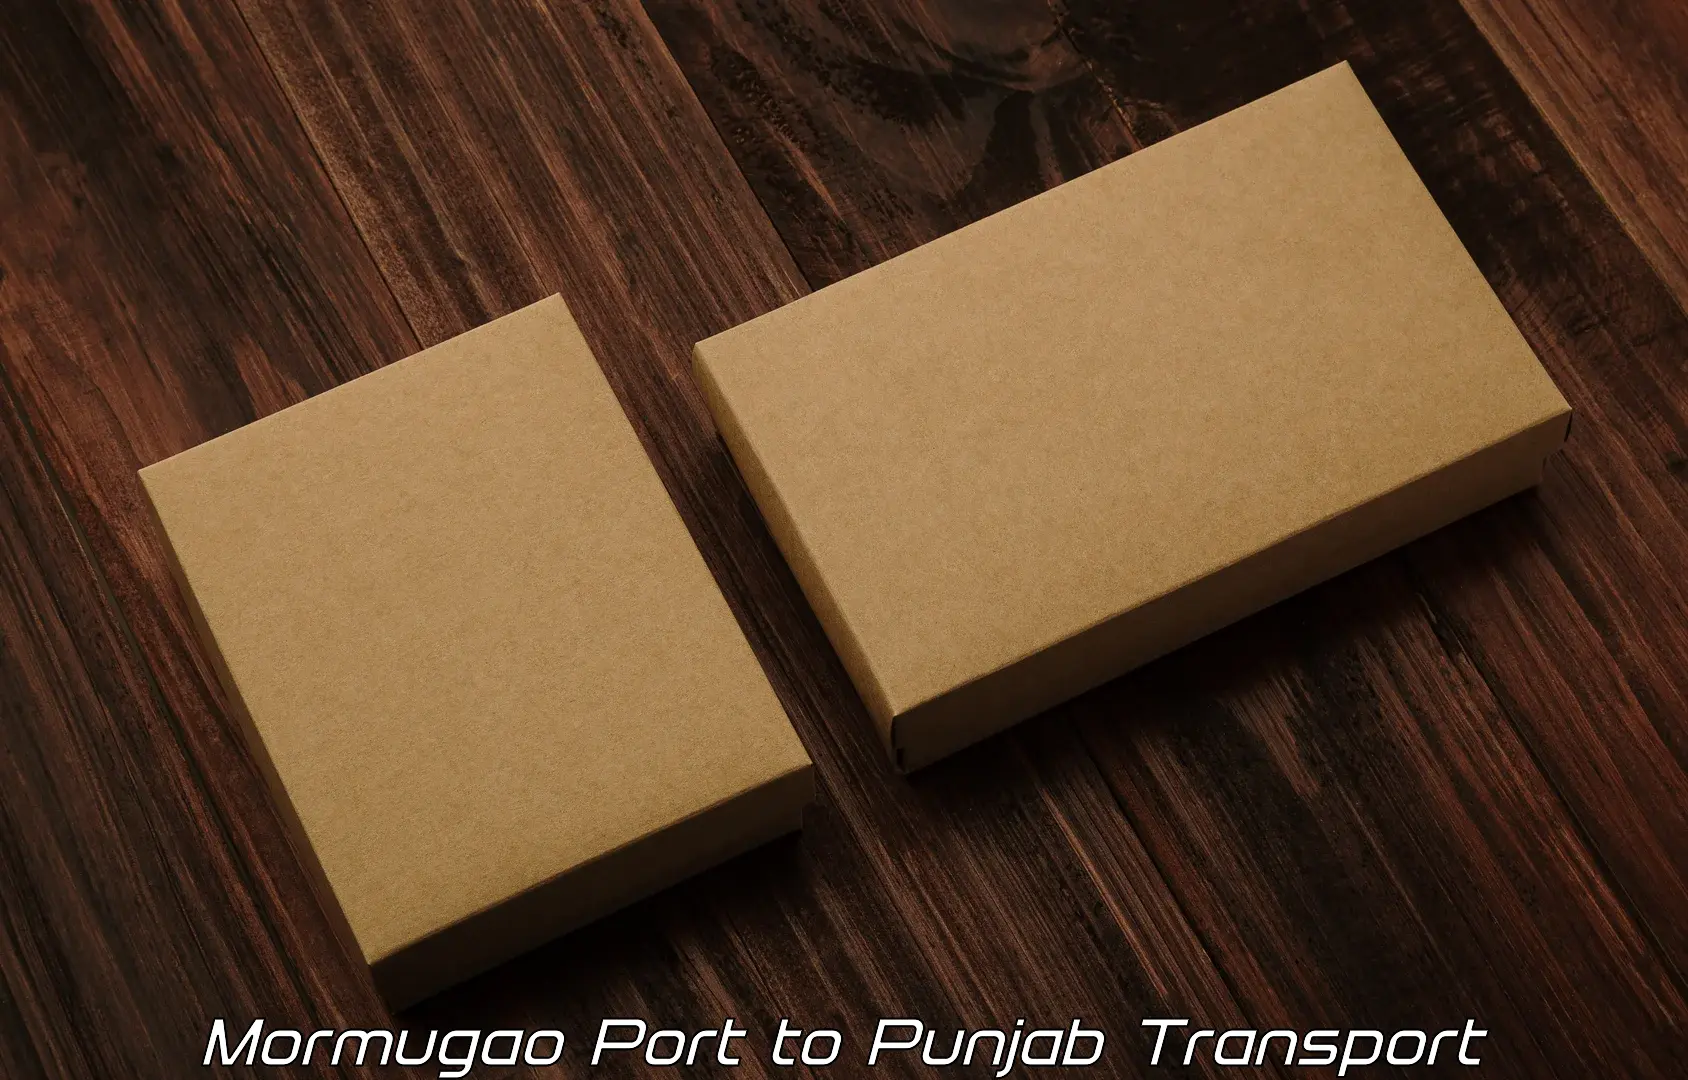 Cargo train transport services Mormugao Port to Jhunir